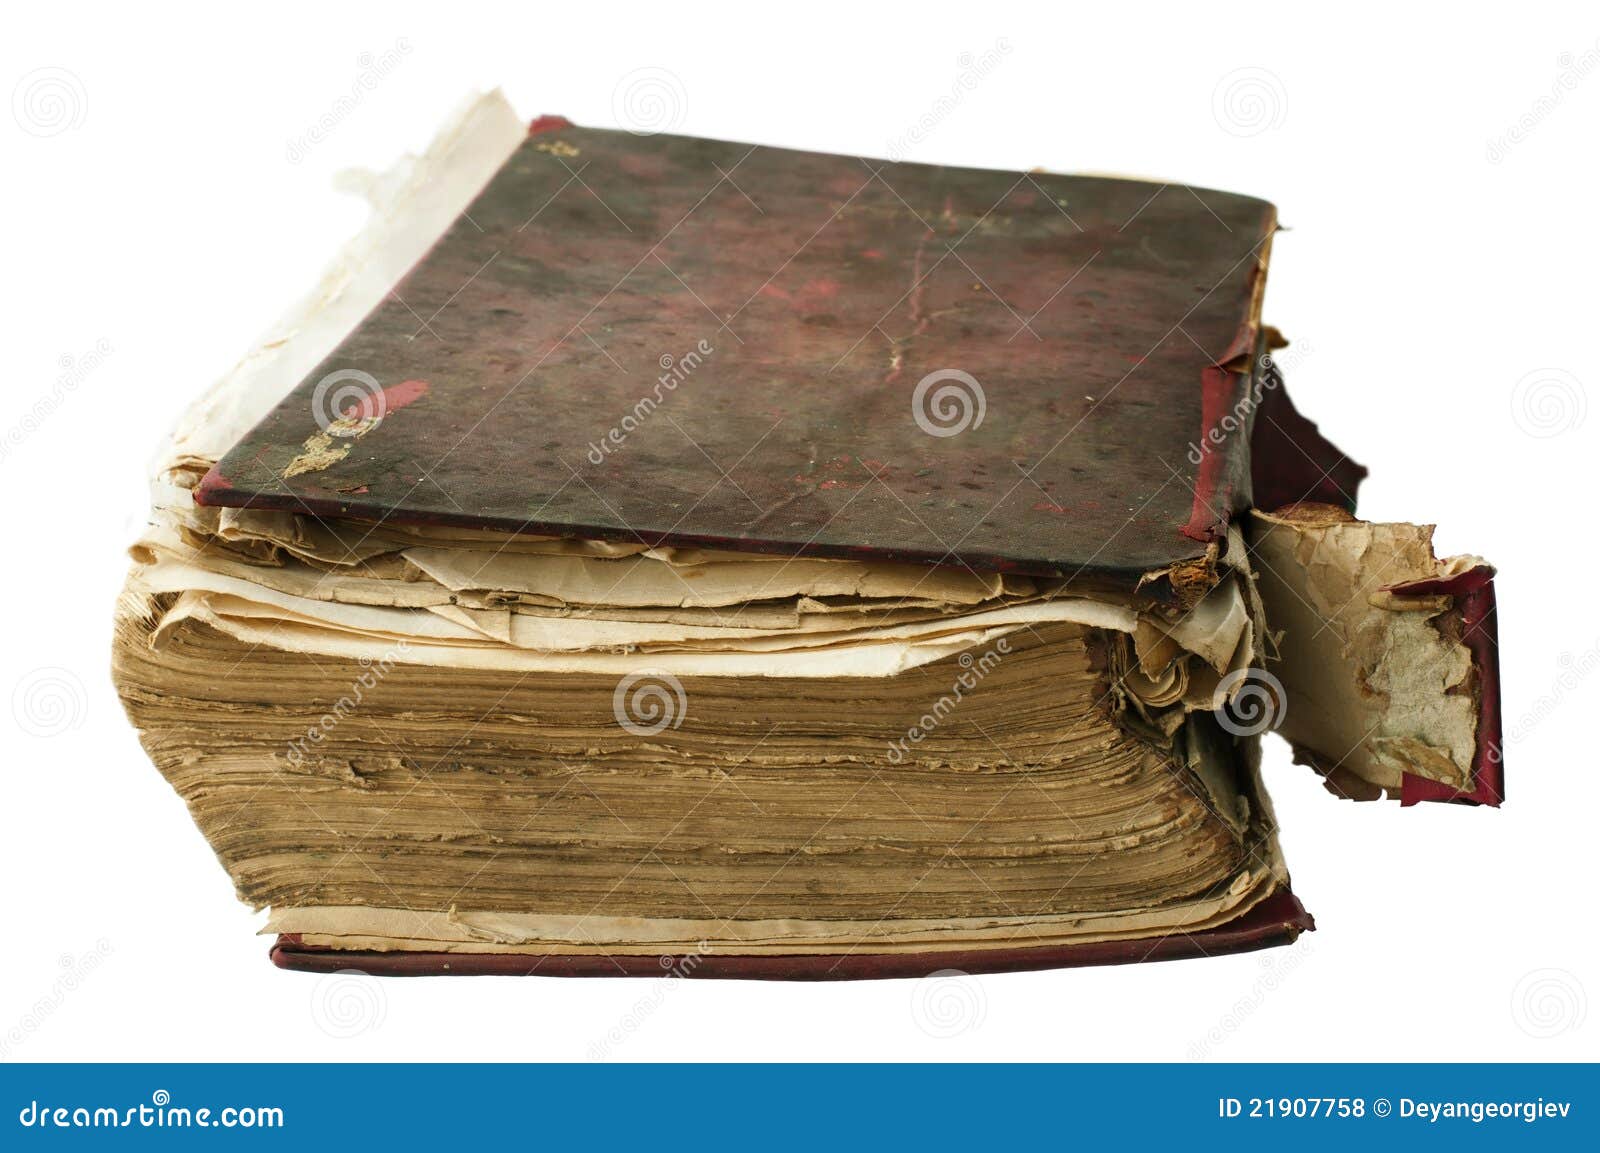 Worn book. Рваная книга. Старая порванная книжка на белом фоне. Рваная книга на прозрачном фоне. Грязная книжка.